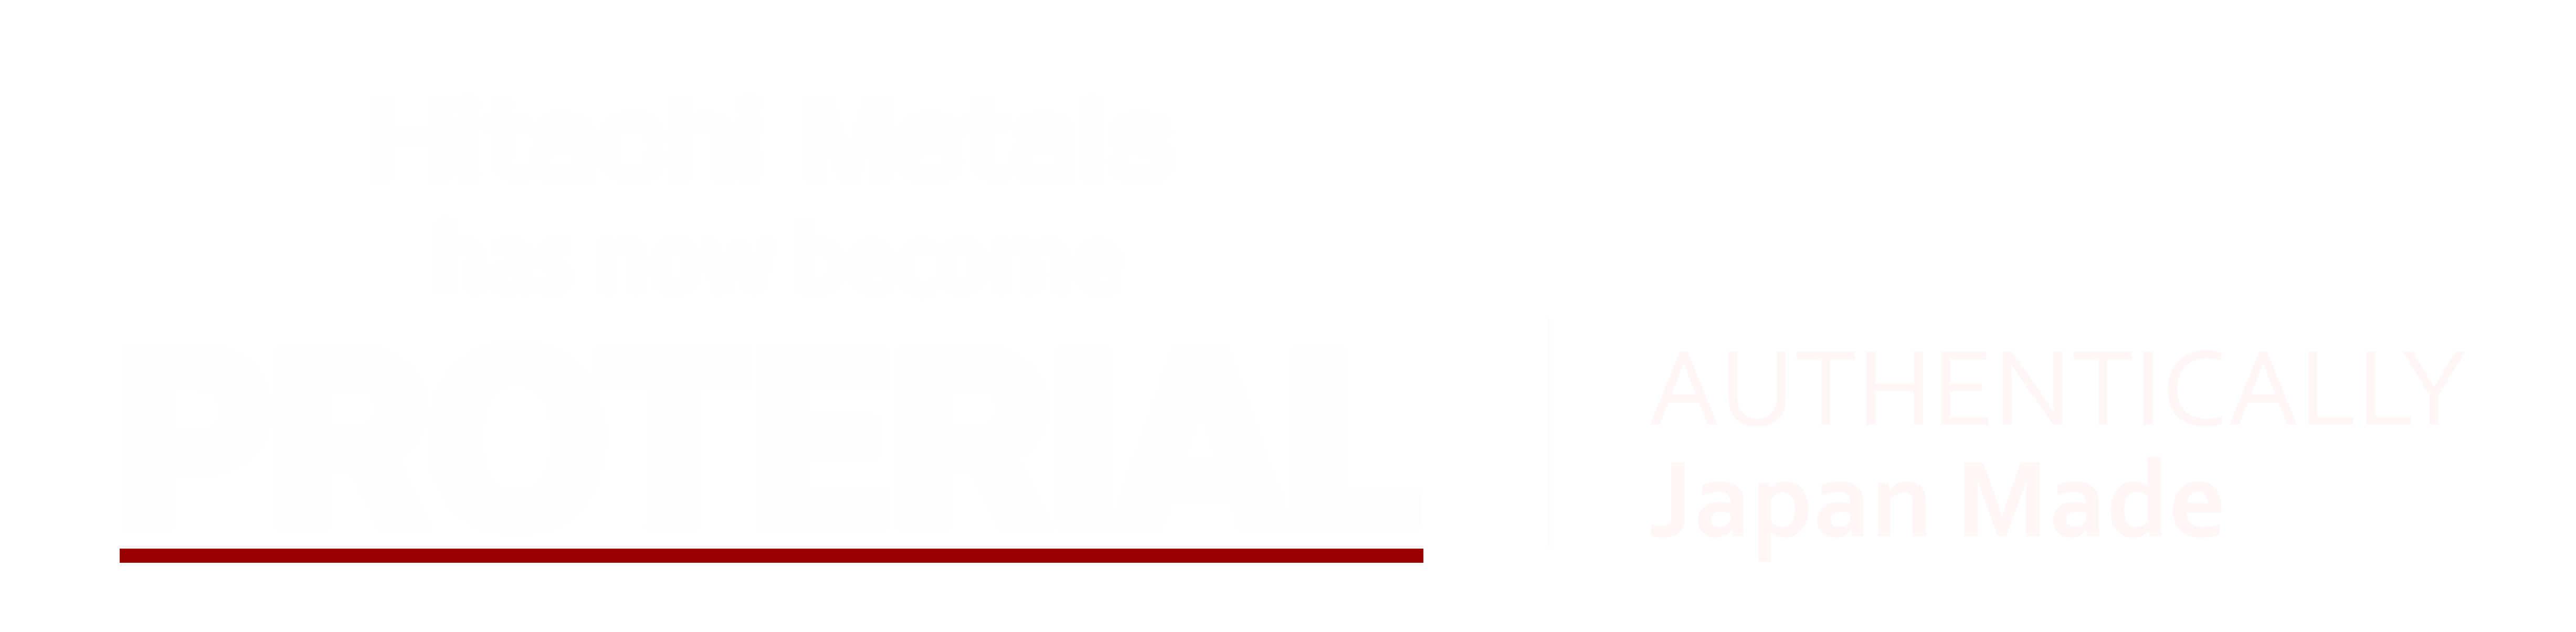 cs-metal-logo-proterial